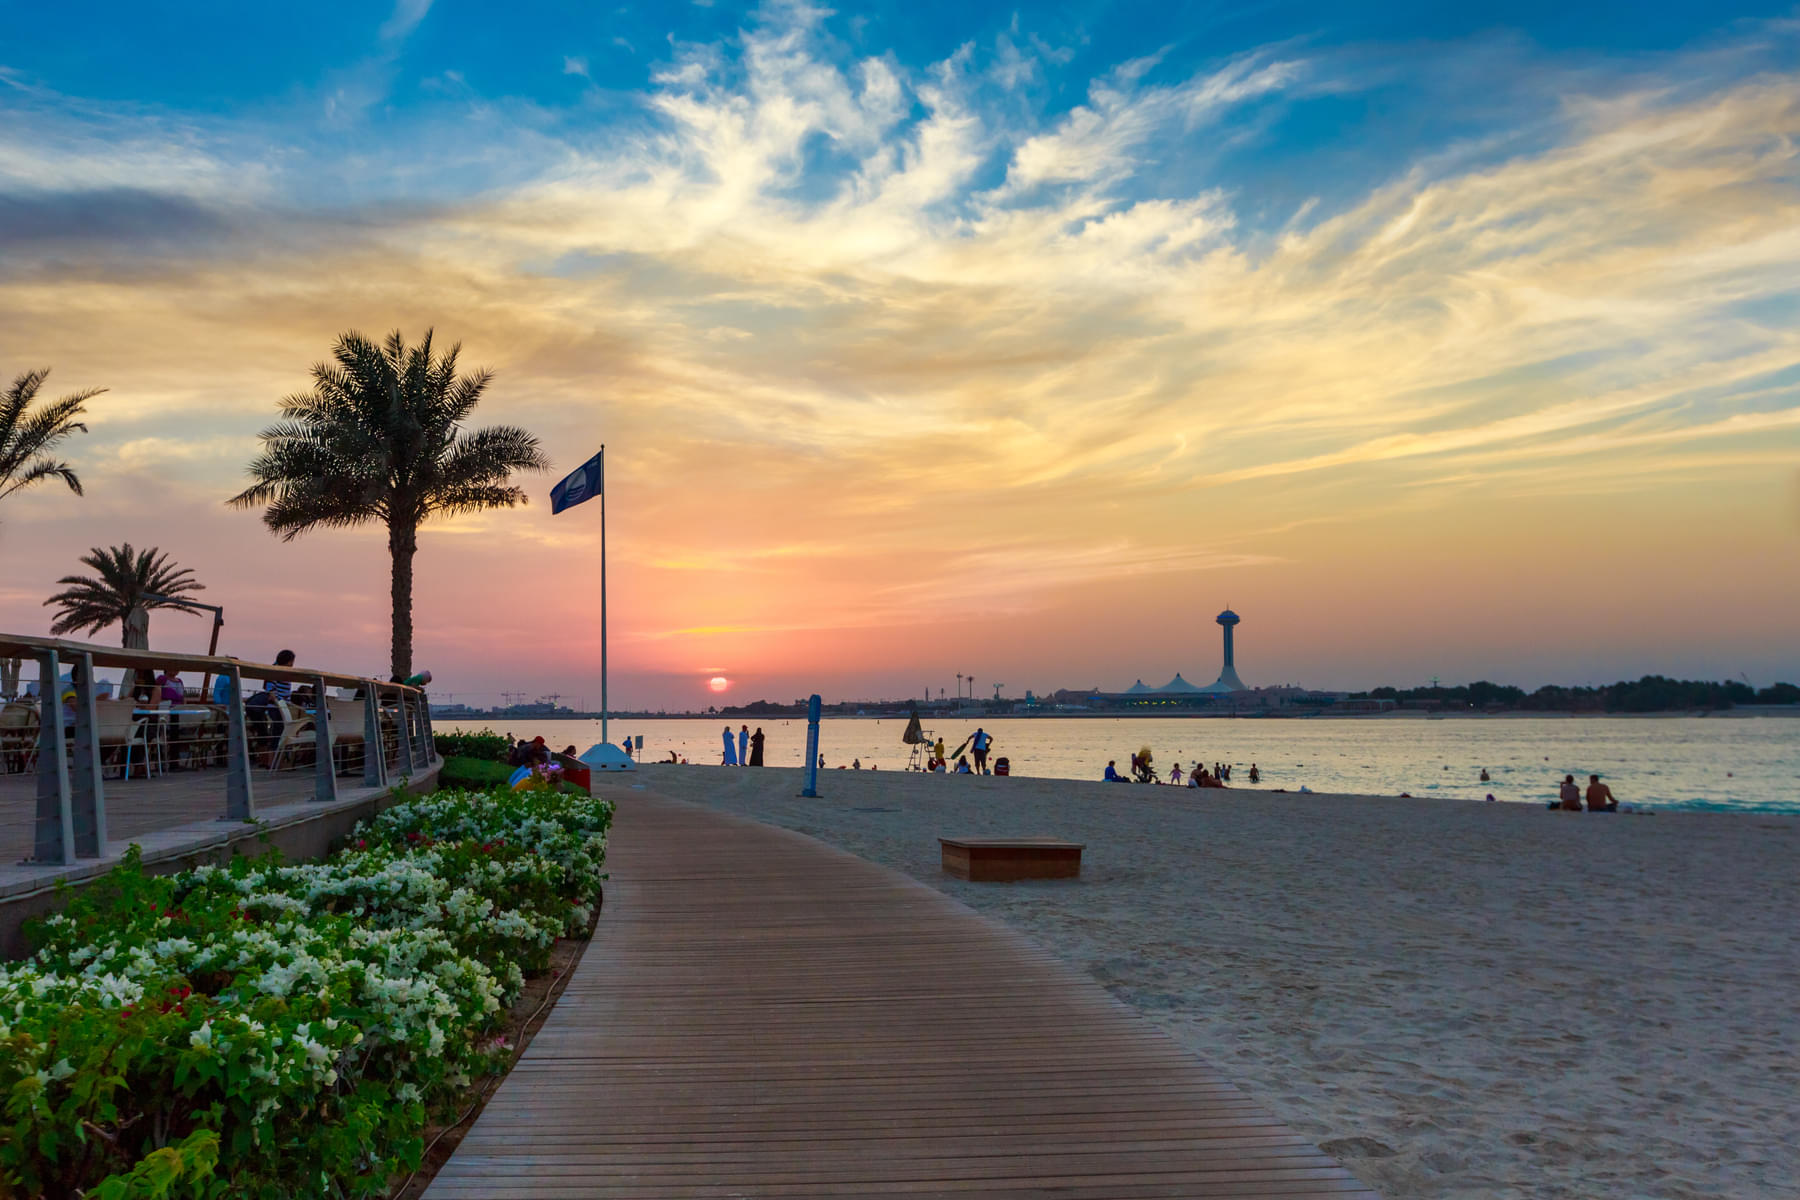 Spend amazing time at the Corniche Beach